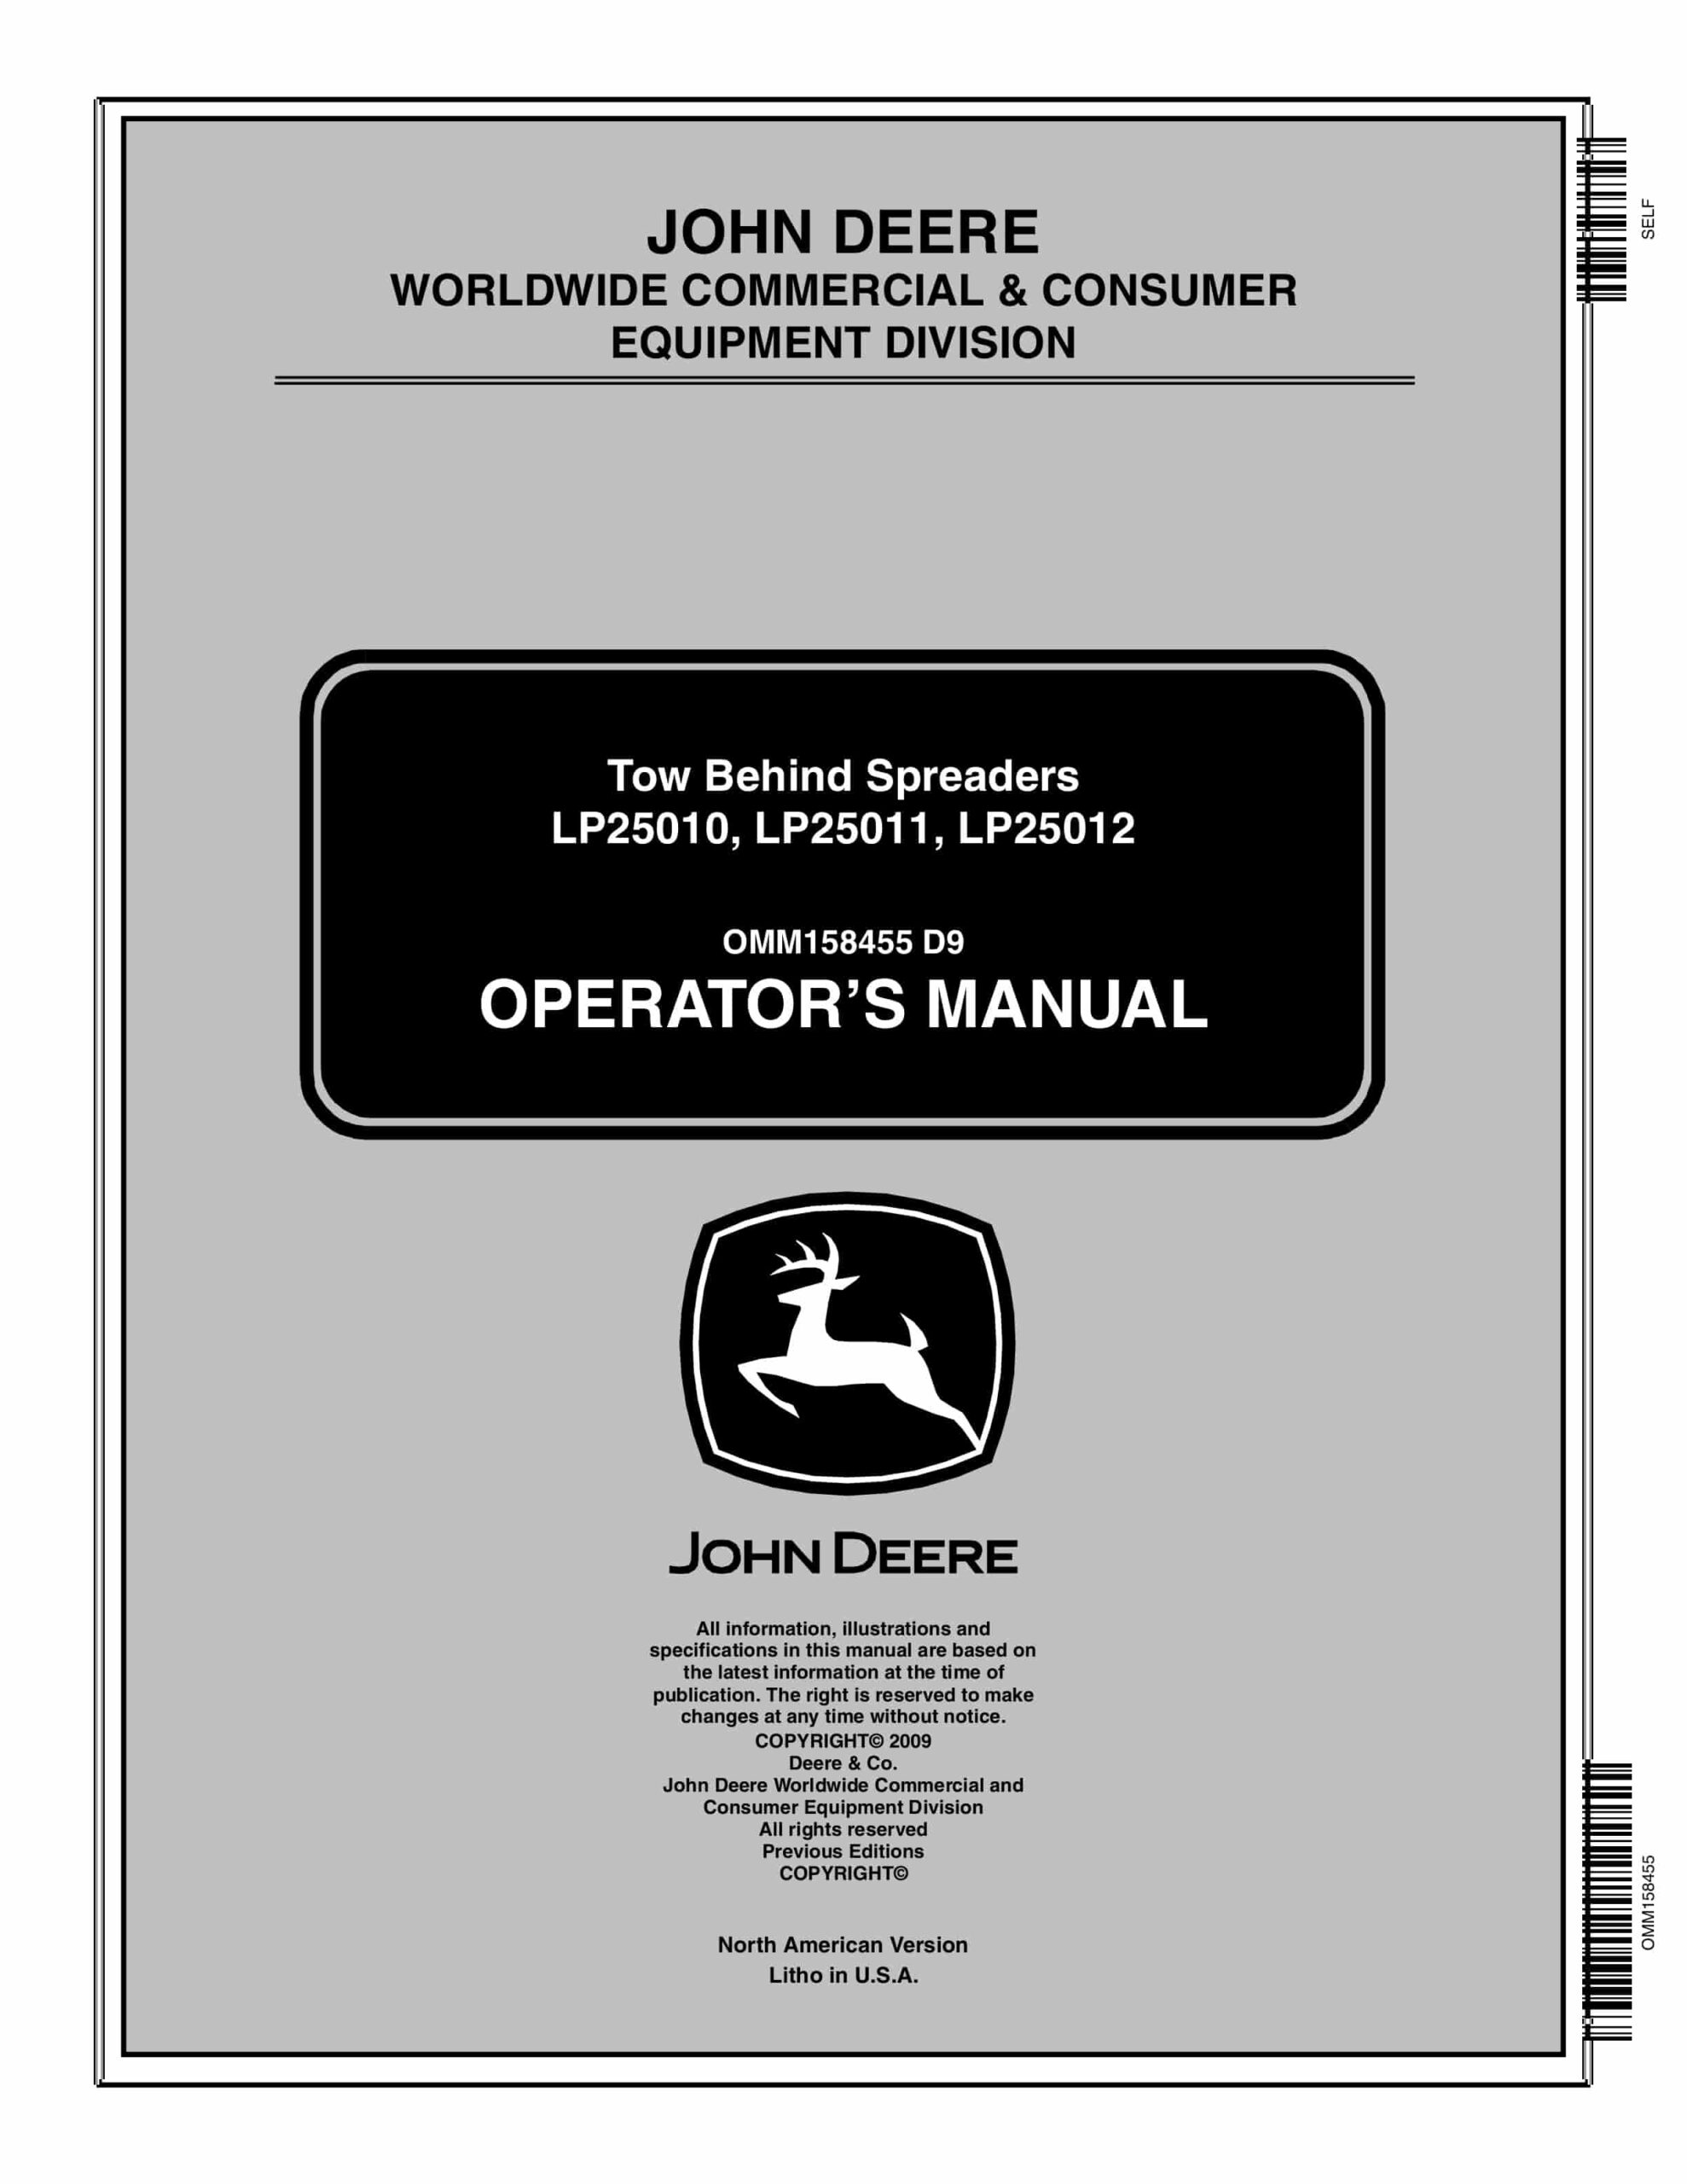 John Deere LP25010, LP25011, LP25012 Tow Behind Spreader Operator Manual OMM158455-1